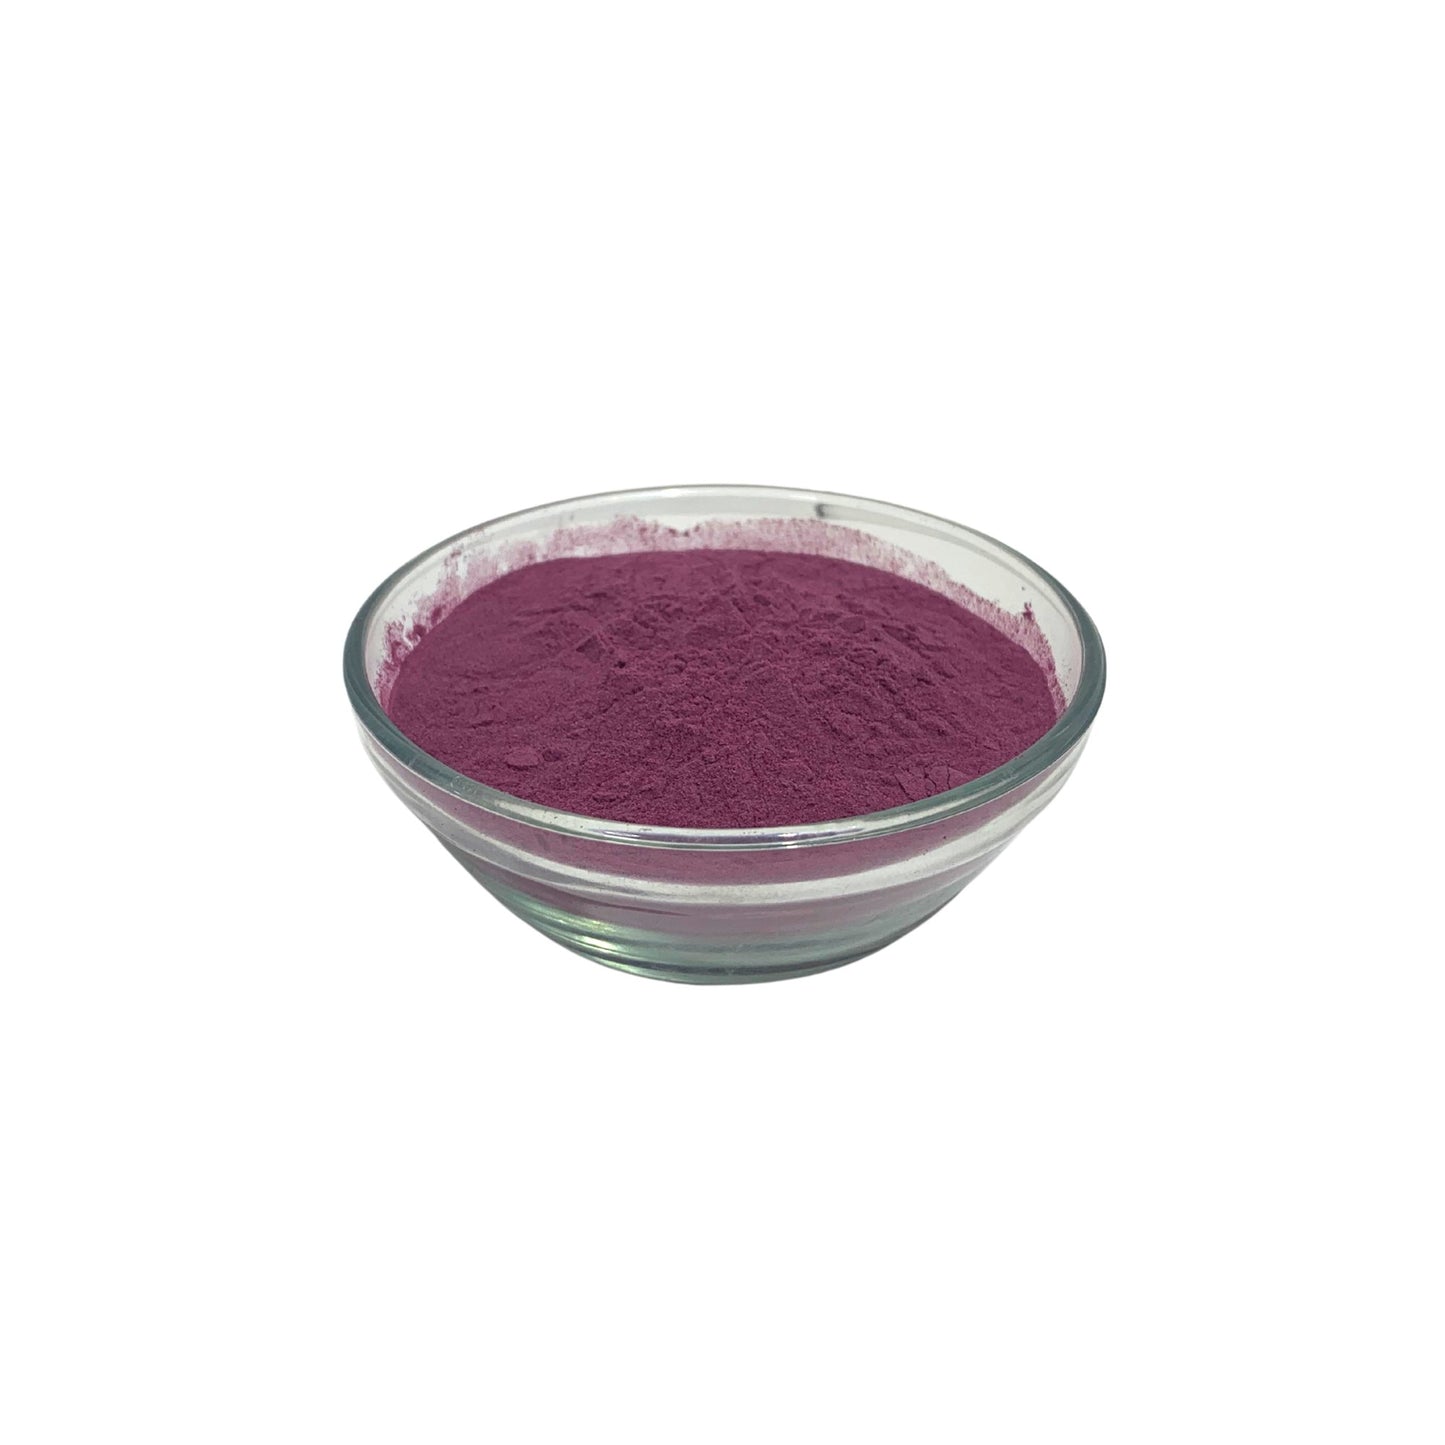 Elderberry Powder - ALFA Water